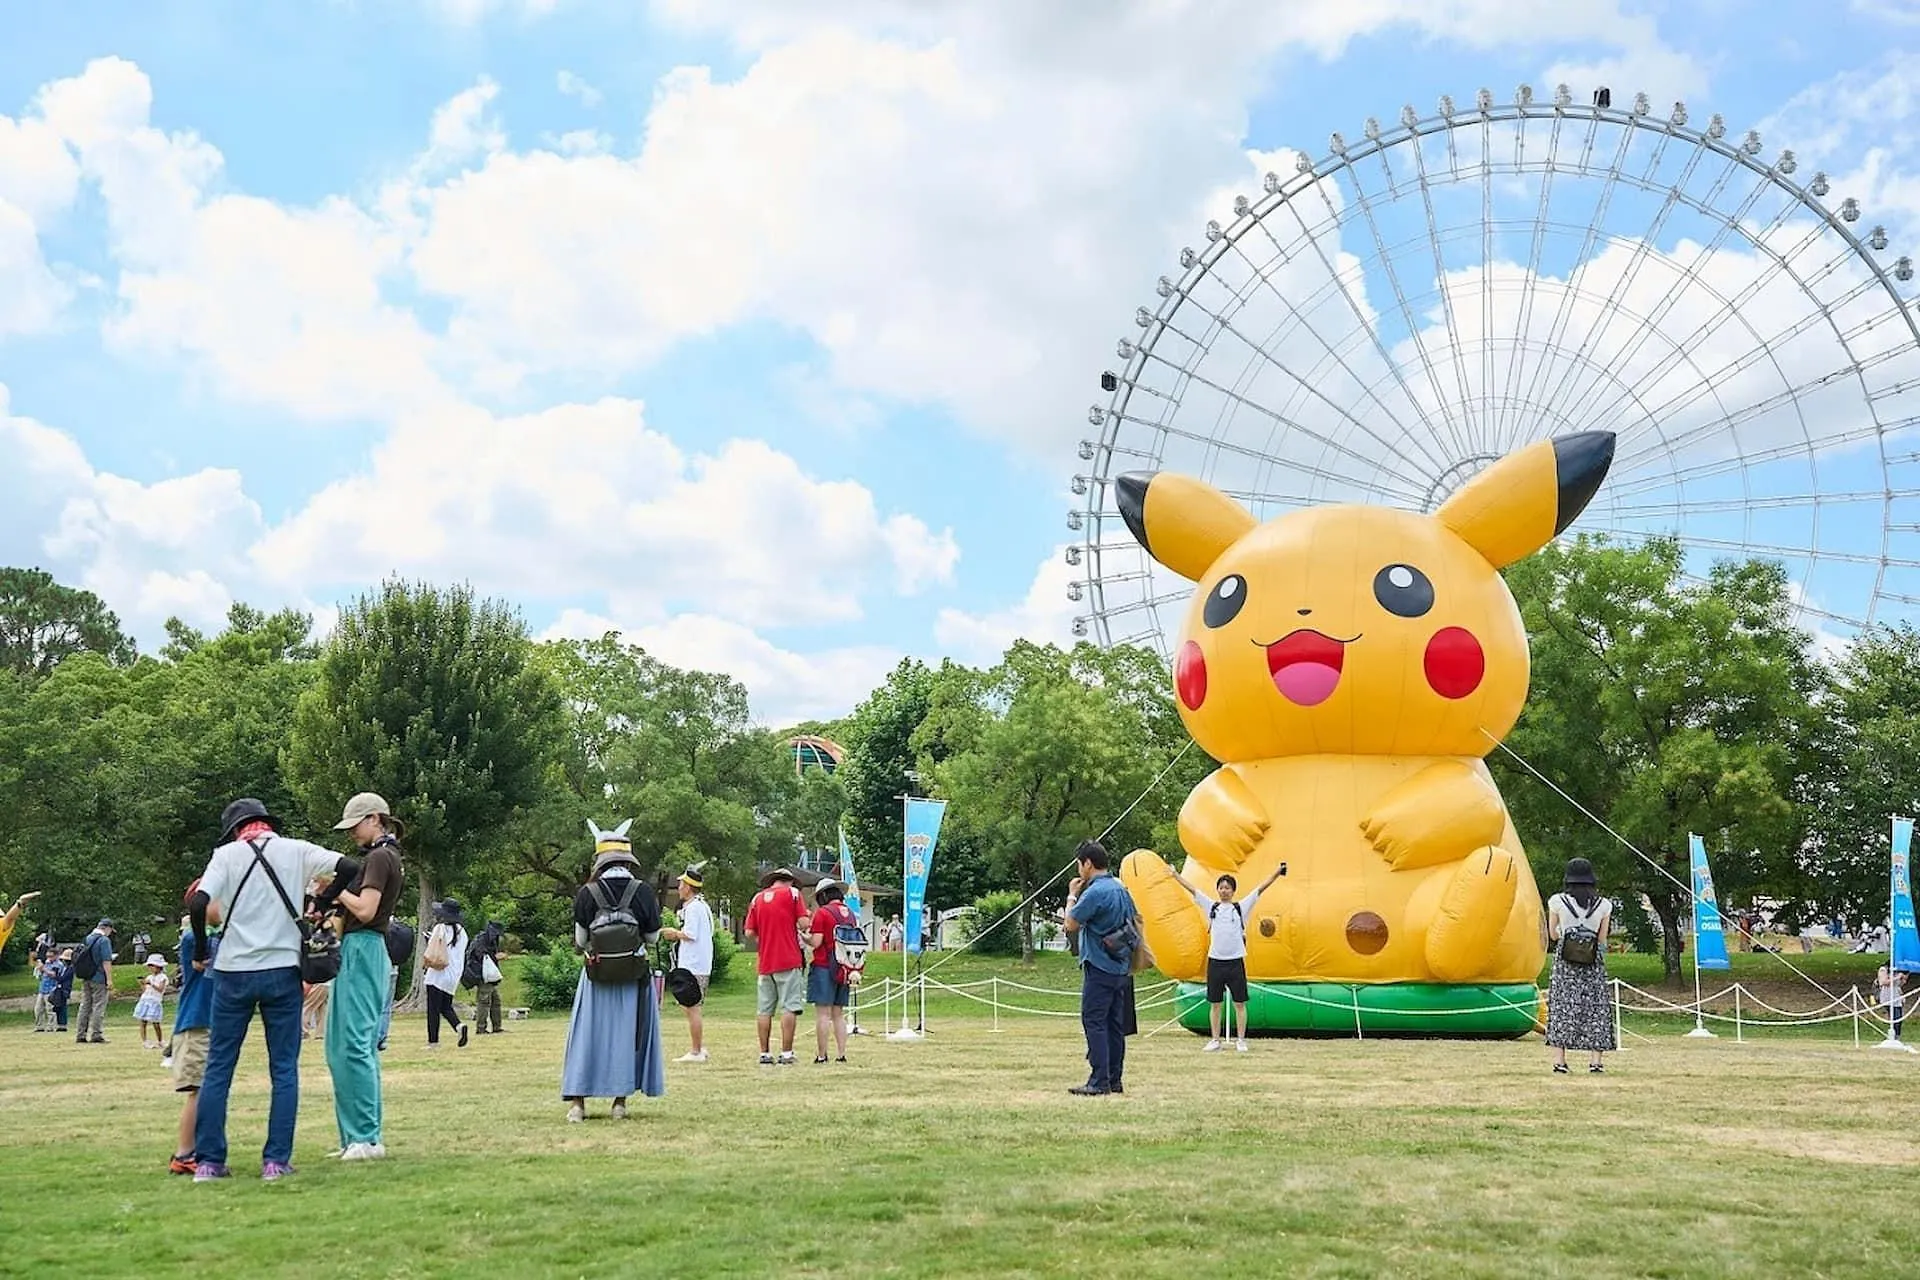 5 lý do bạn nên tham gia sự kiện Pokemon GO Fest 2024